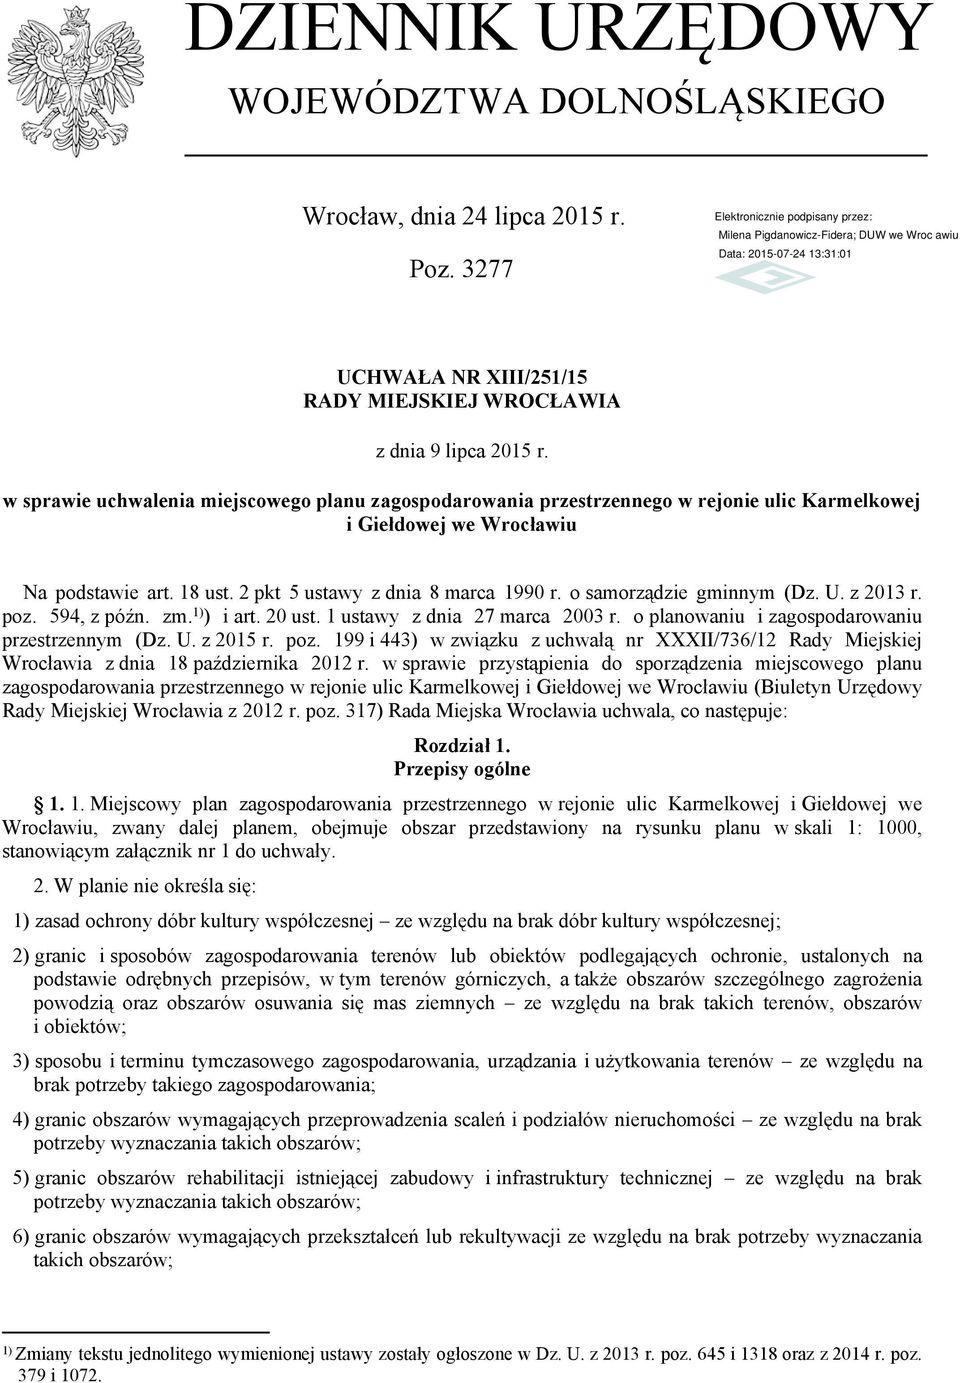 o samorządzie gminnym (Dz. U. z 2013 r. poz. 594, z późn. zm. 1) ) i art. 20 ust. 1 ustawy z dnia 27 marca 2003 r. o planowaniu i zagospodarowaniu przestrzennym (Dz. U. z 2015 r. poz. 199 i 443) w związku z uchwałą nr XXXII/736/12 Rady Miejskiej Wrocławia z dnia 18 października 2012 r.